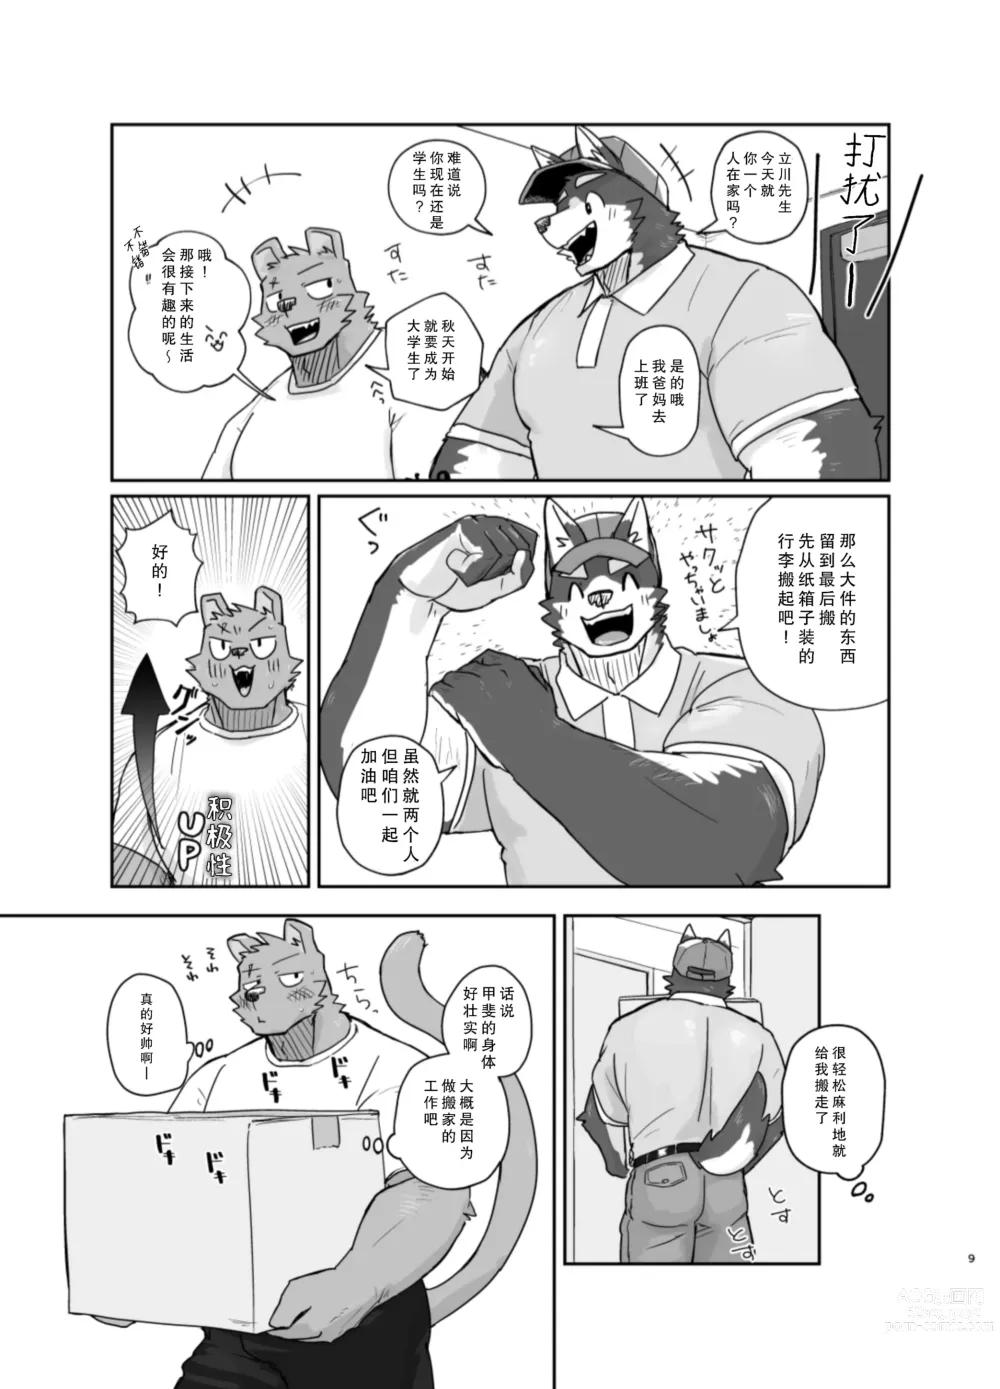 Page 9 of doujinshi 搬家的十分钟服务